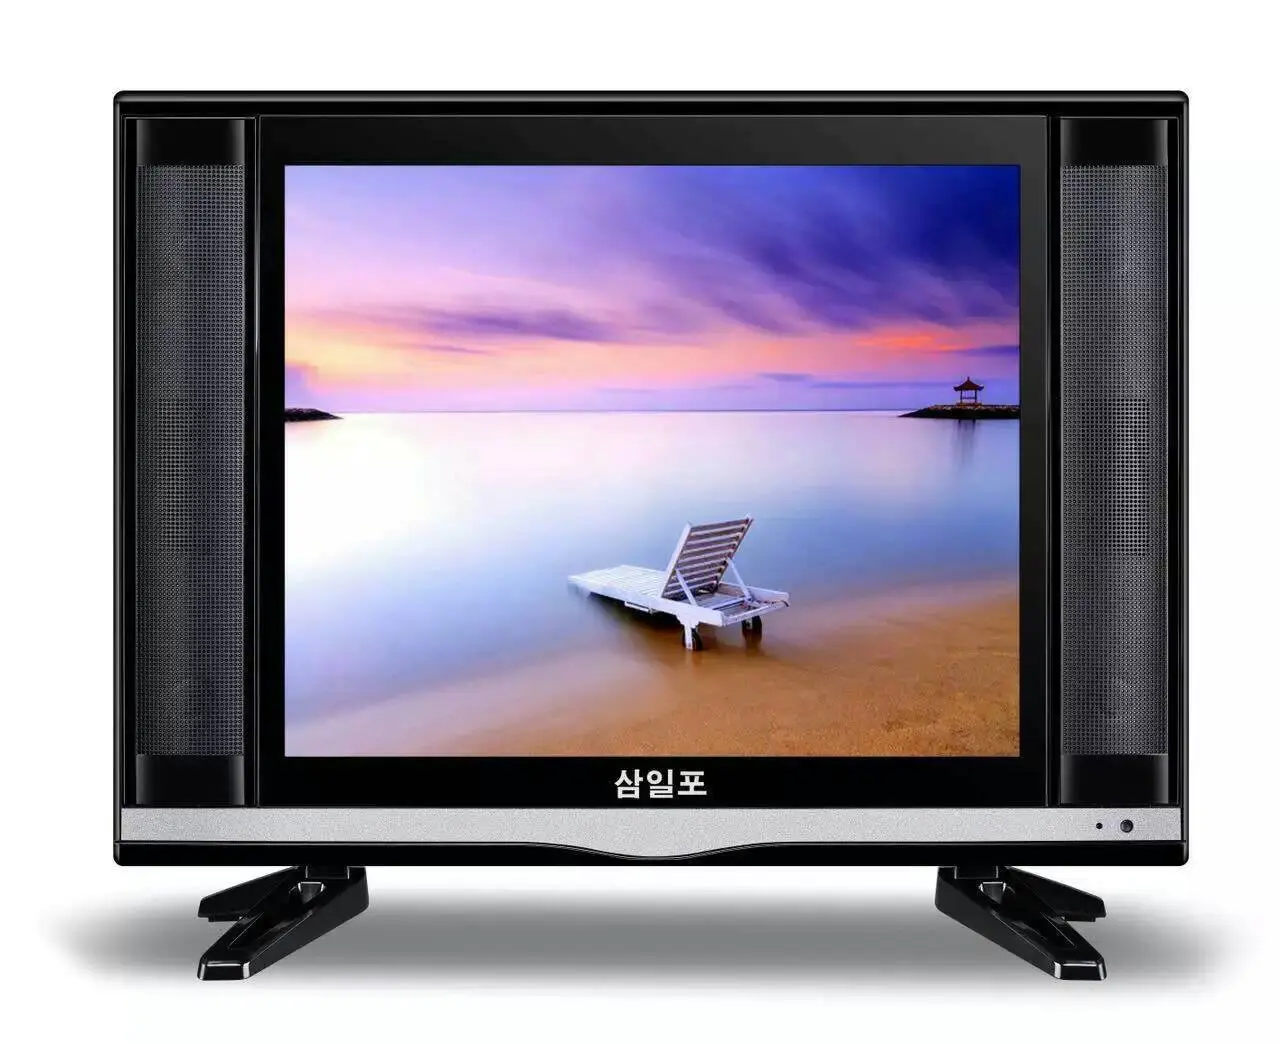 Xinyao LCD 17 inch flat screen tv fashion design for lcd screen